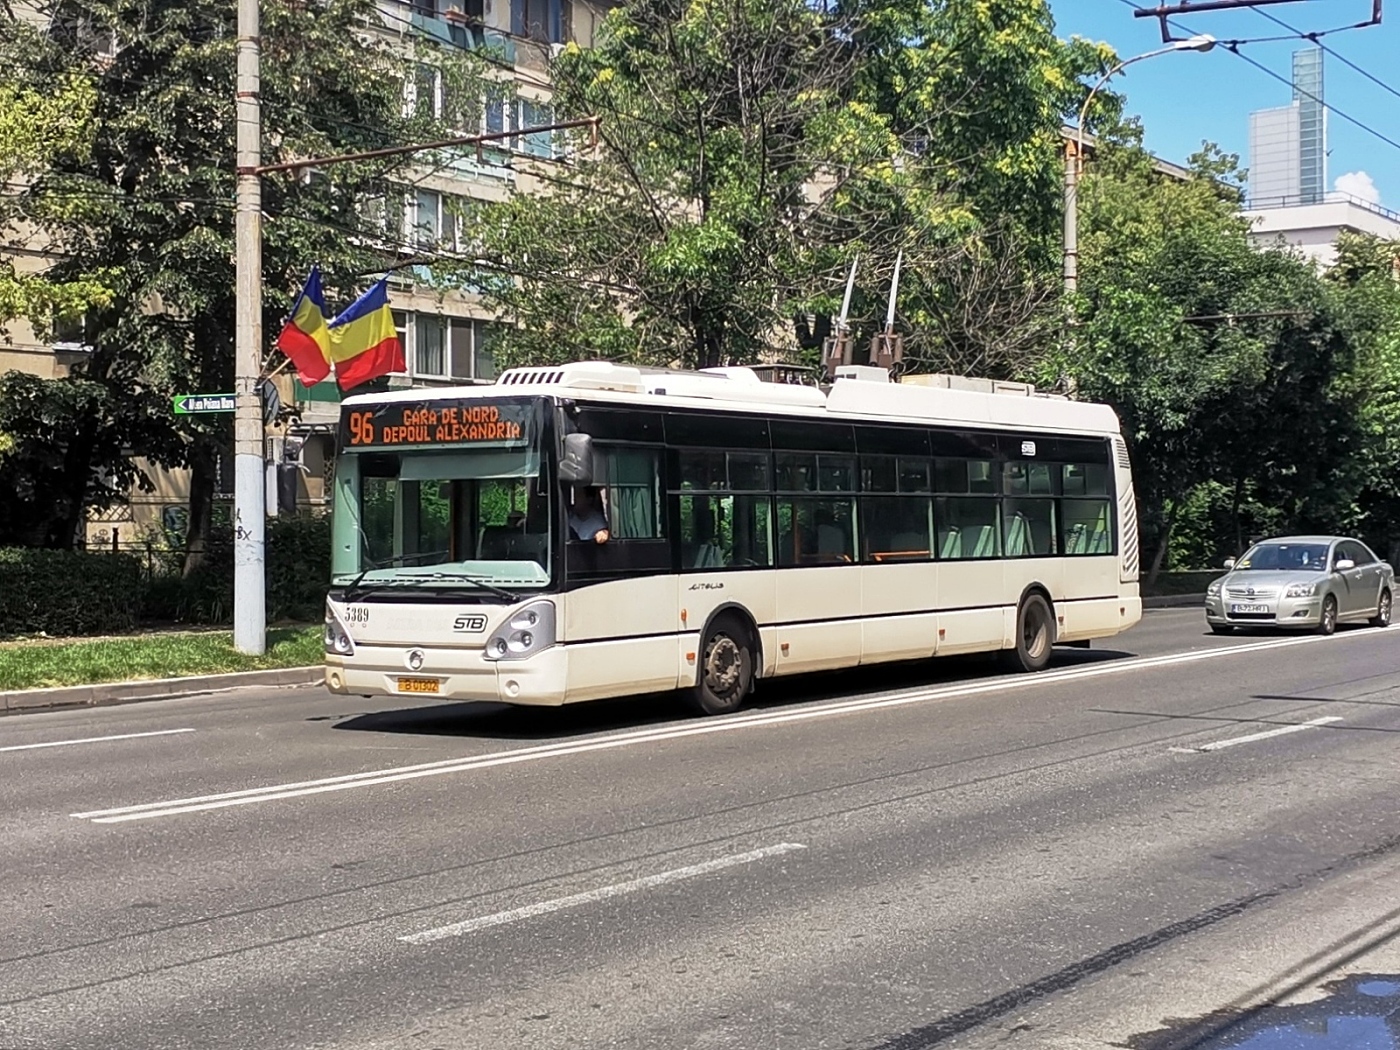 Irisbus Citelis 12T #5389